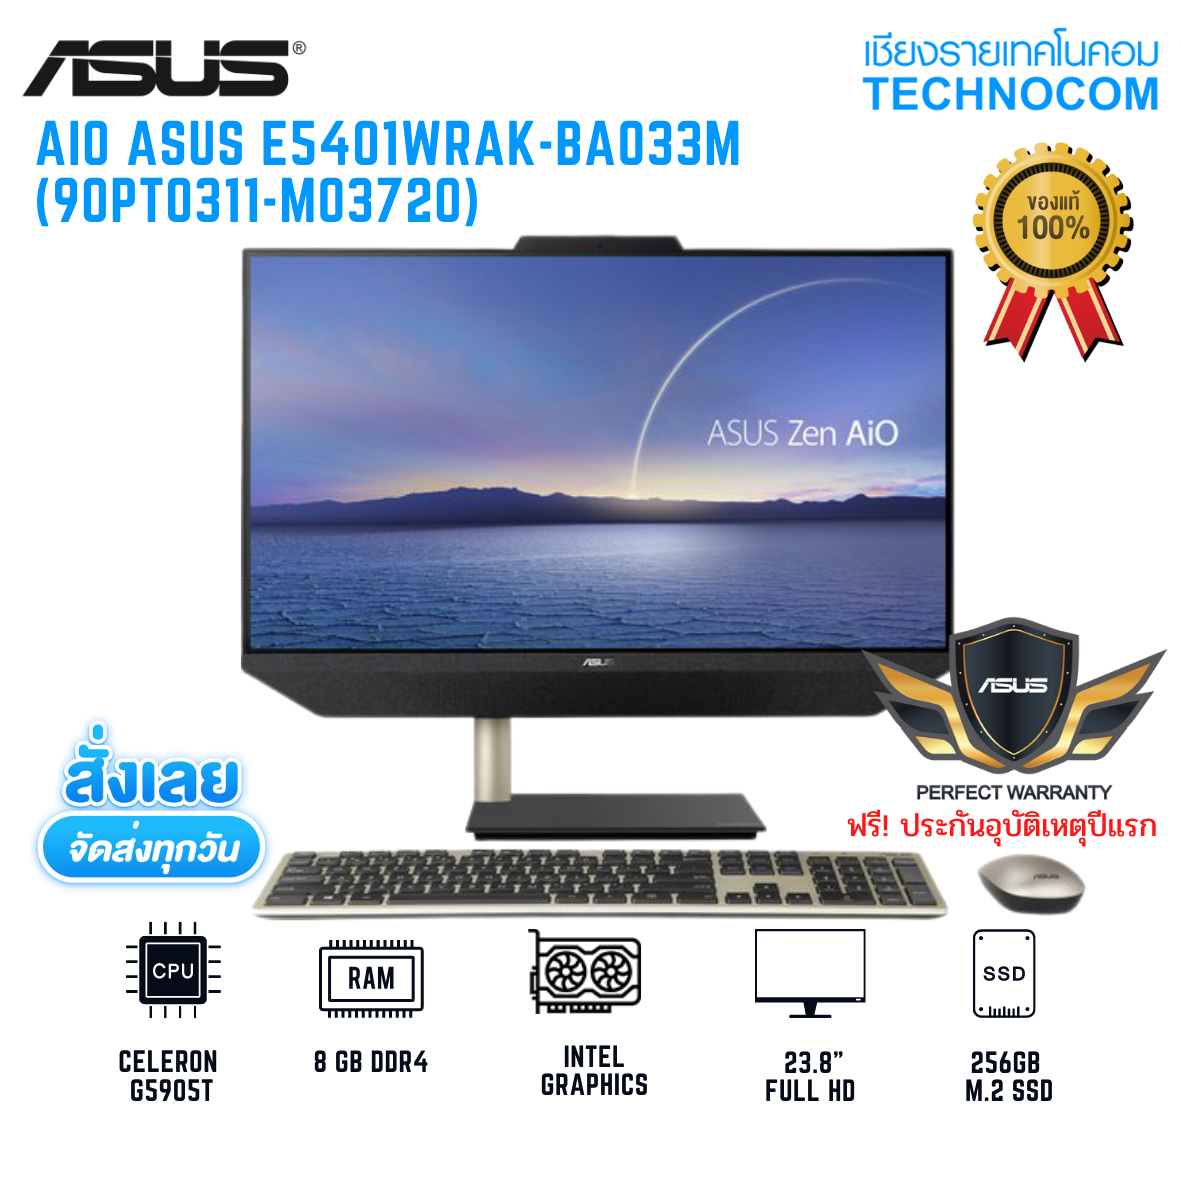 AIO ASUS E5401WRAK-BA033M CELERON G5905T/8GB DDR4/256GB M.2 SSD/23.8